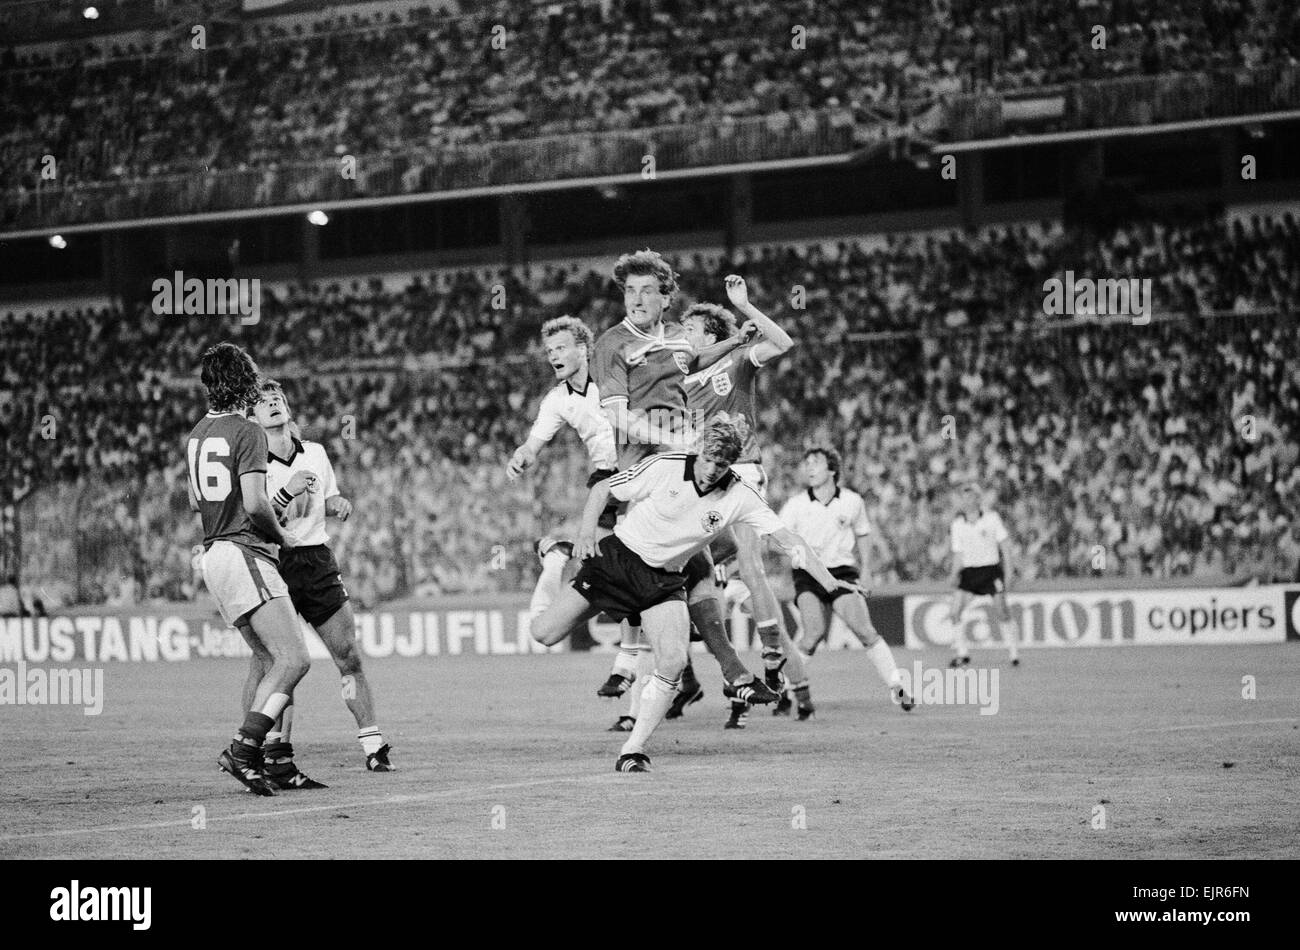 1982 World Cup Finale zweite Runde Gruppe B entsprechen in Madrid, Spanien. Bundesrepublik Deutschland 0 V England 0. England-Verteidiger Terry Butcher springt für einen hohen Ball mit westdeutschen Angreifer während des Spiels. 29. Juni 1982. Stockfoto